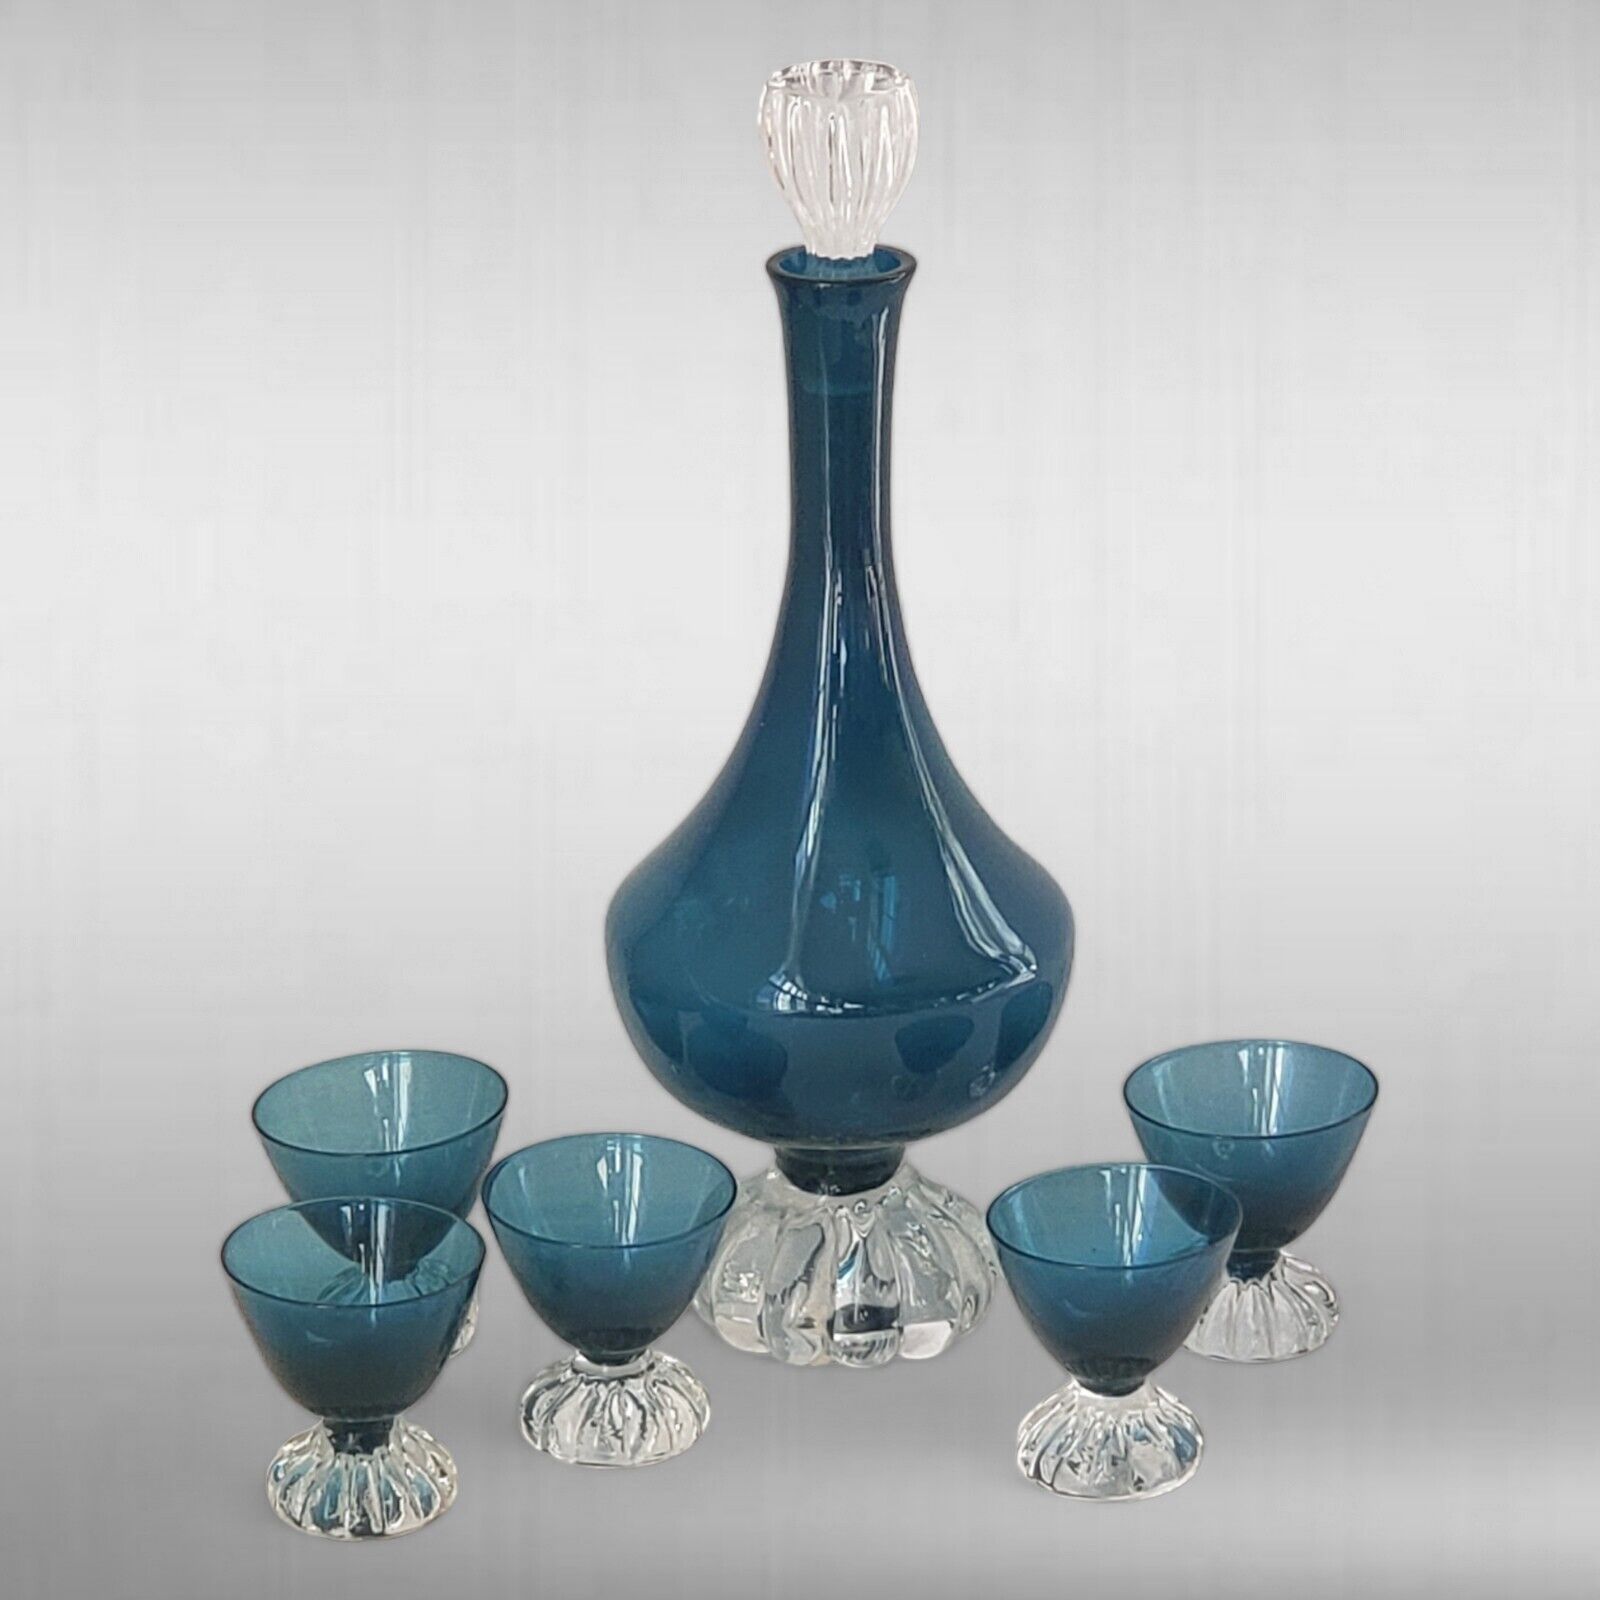 Vintage Aseda Blown Glass Teal Blue Decanter & 5 Cordials Set Made in Sweden